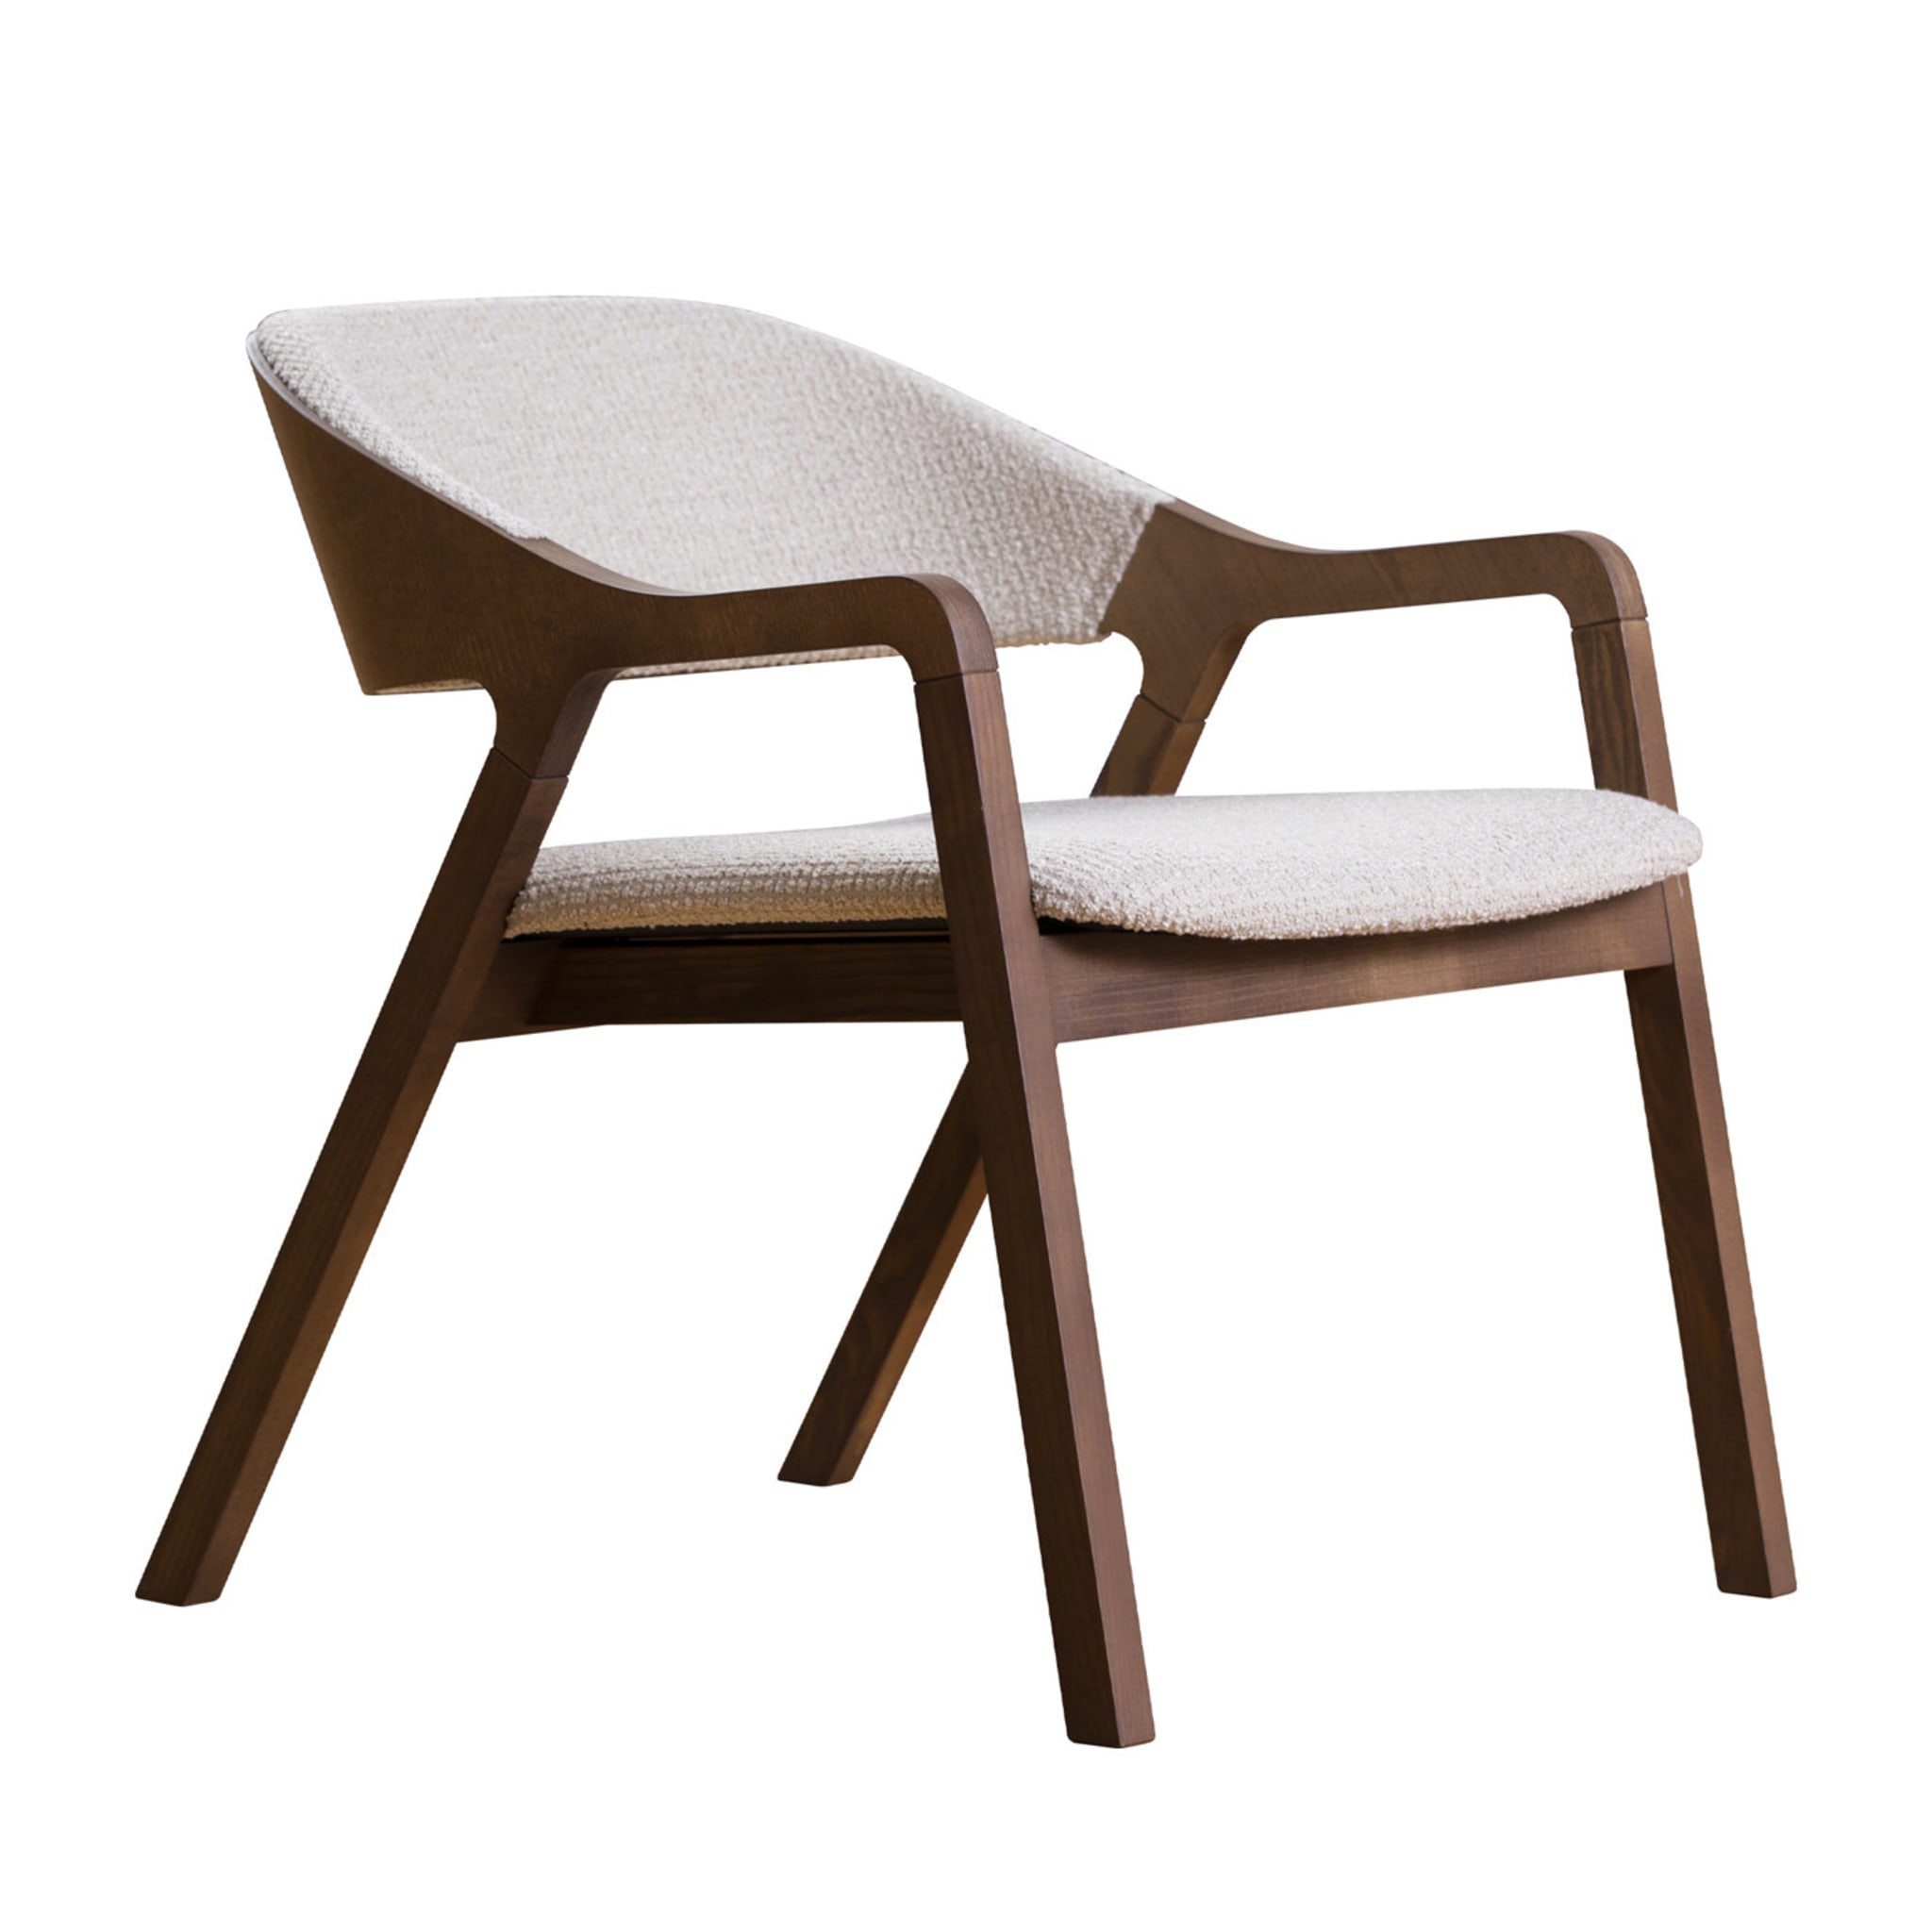 Layer 093 Chair by Michael Geldmacher - Main view